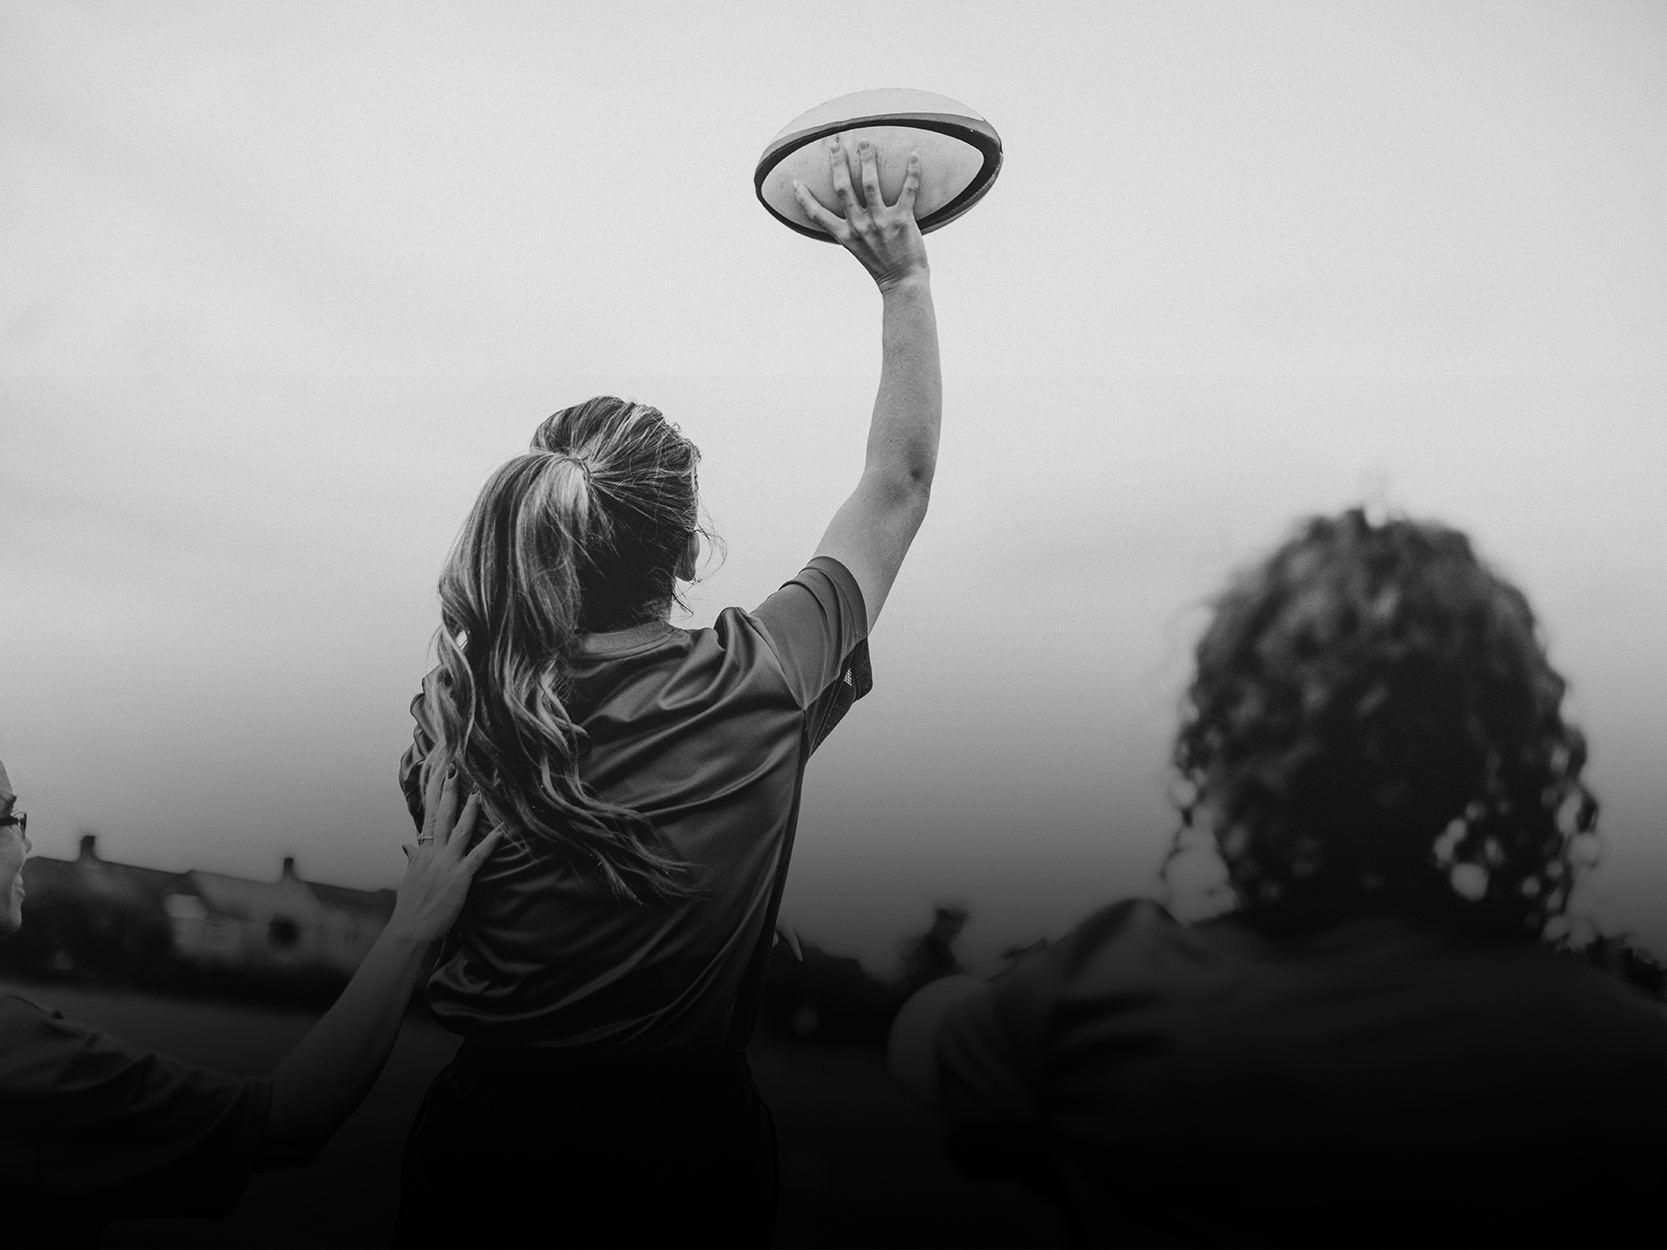 Como se joga Rugby: regras, posições e curiosidades